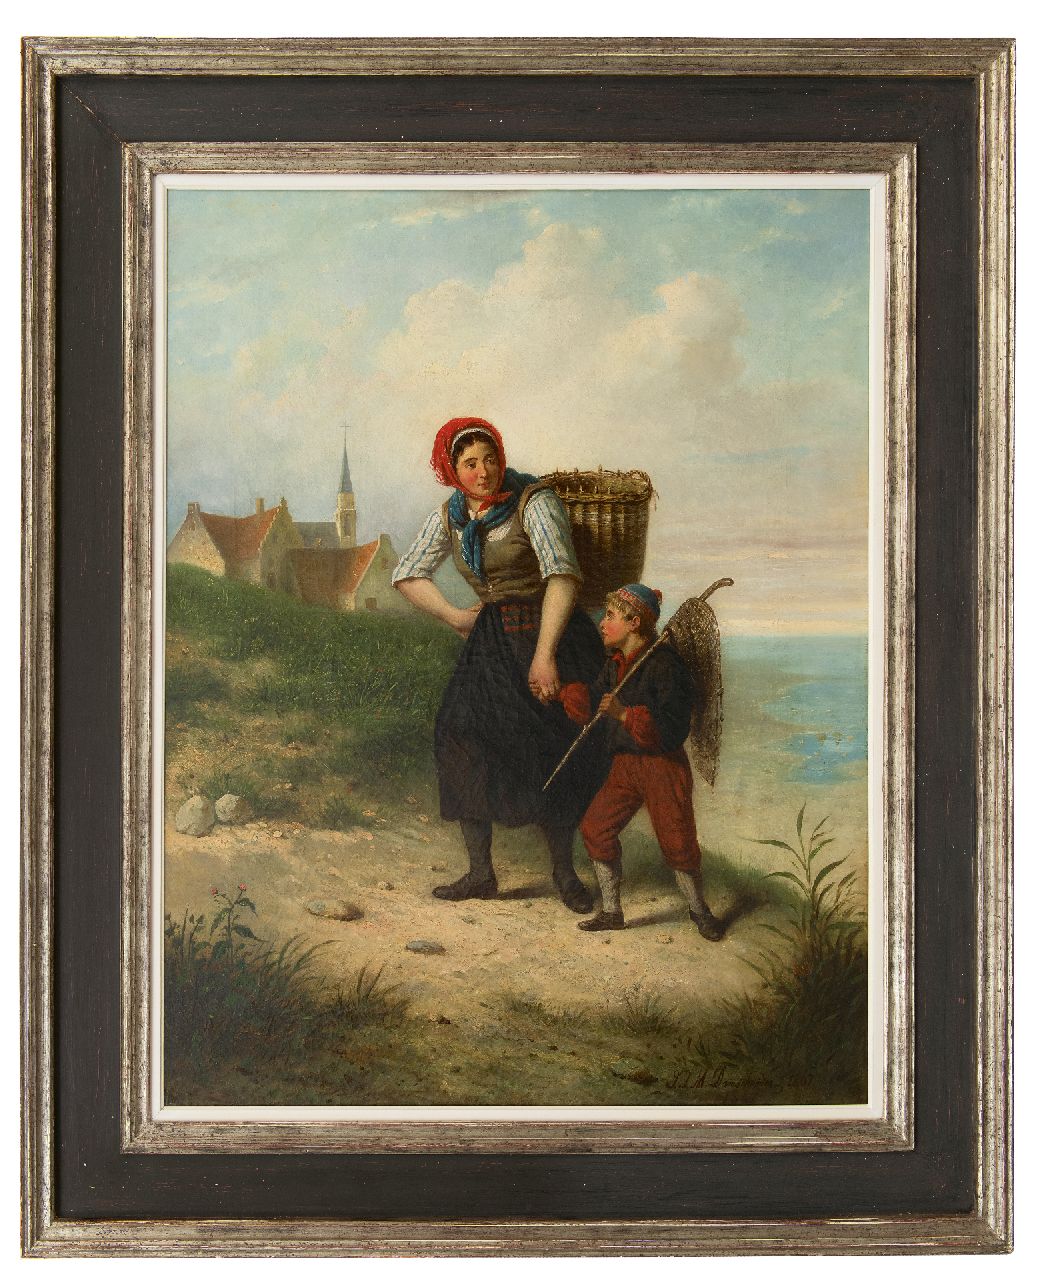 Damschreuder J.J.M.  | Jan Jacobus Matthijs Damschreuder | Schilderijen te koop aangeboden | Vissersvrouw met kind in het duin, olieverf op doek 93,6 x 71,1 cm, gesigneerd rechtsonder en gedateerd 1867